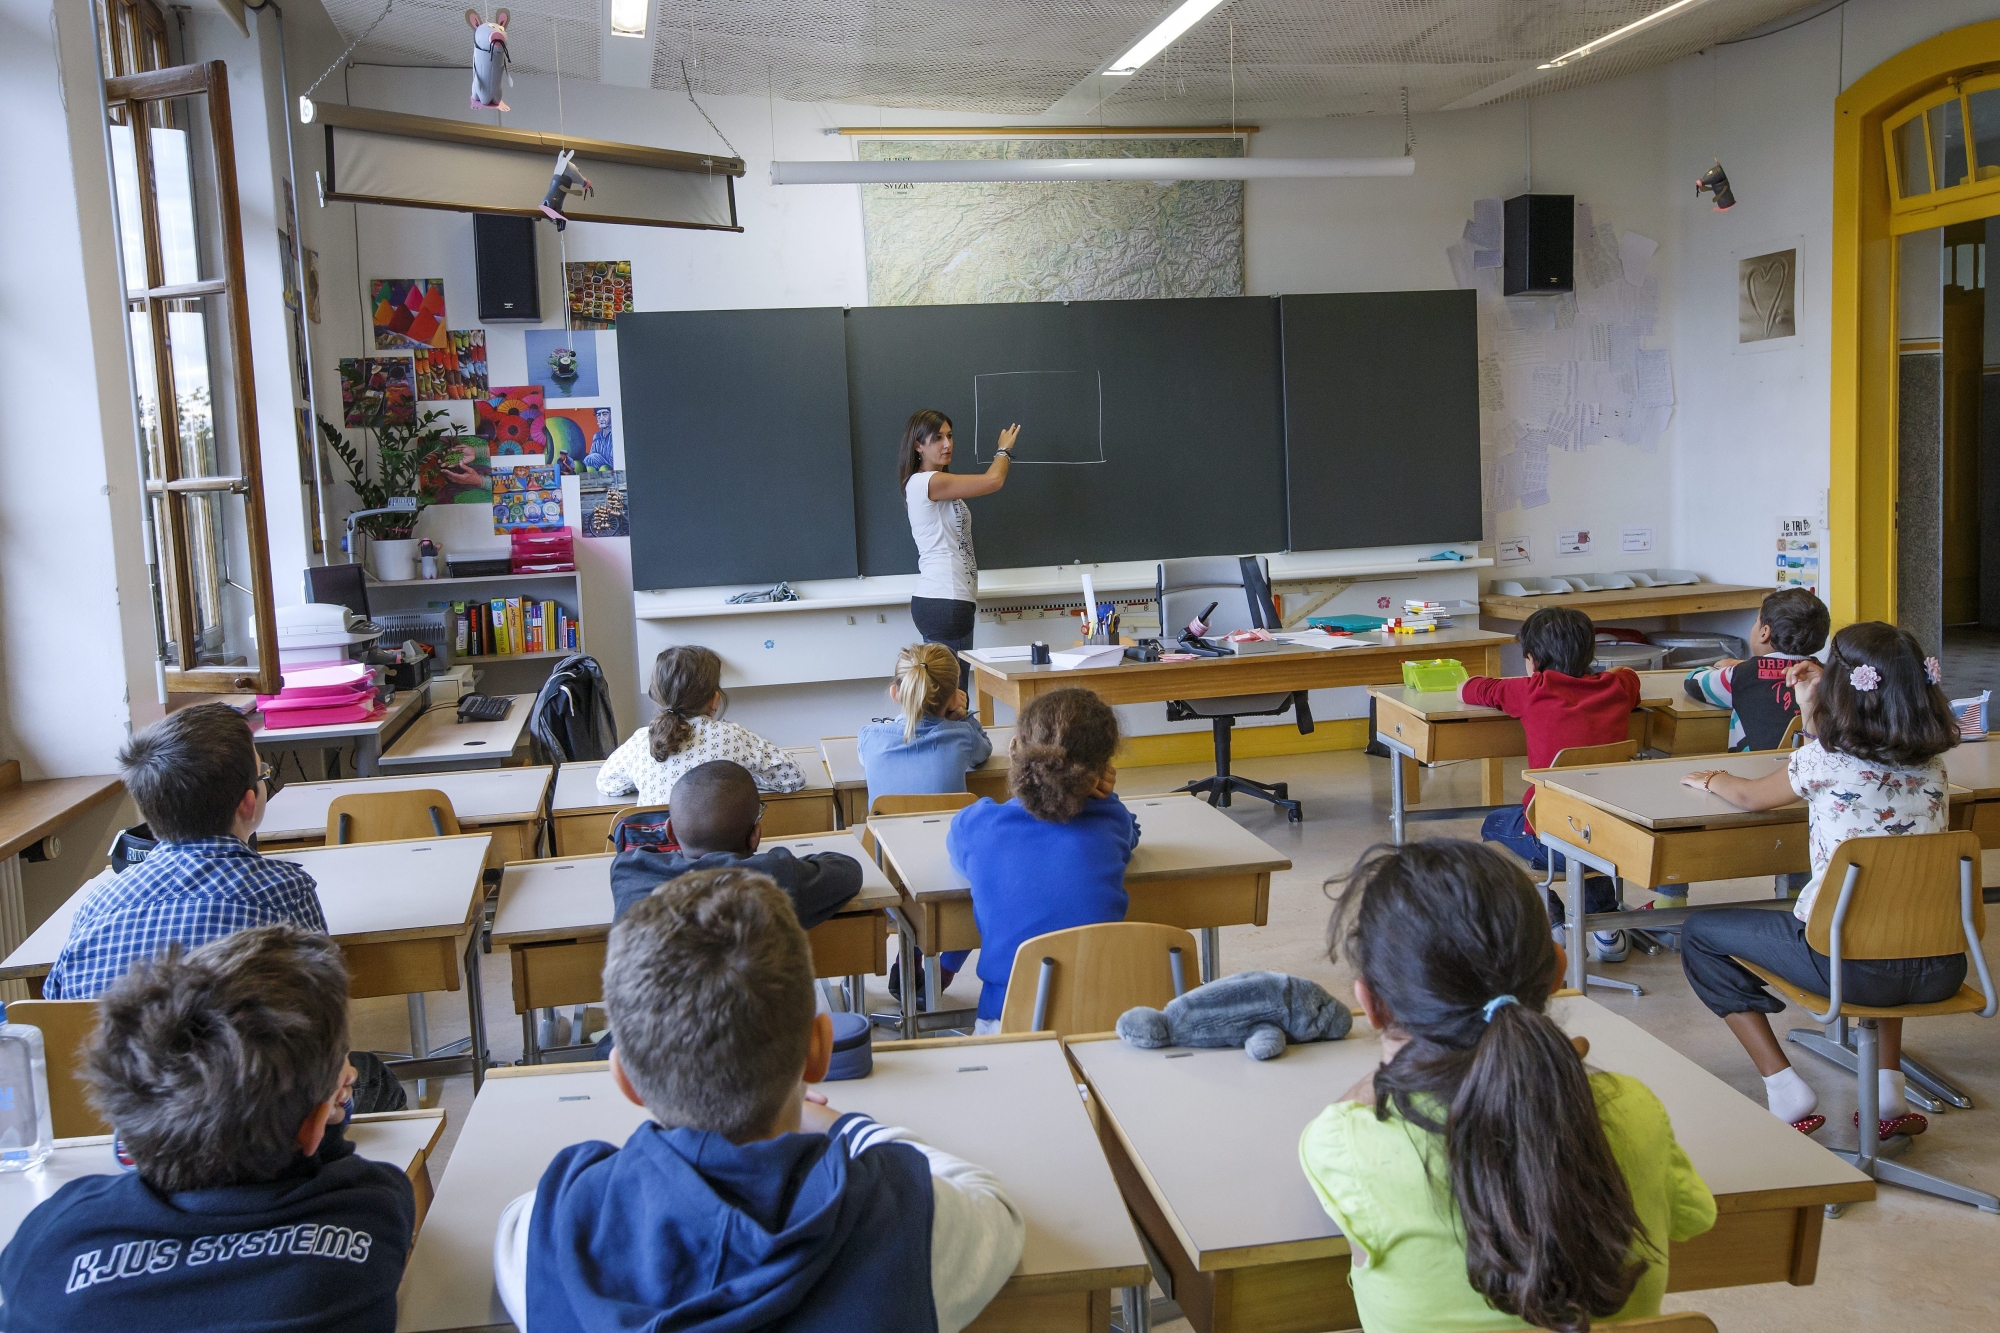 L'Ecole devrait engager davantage d'enseignants, selon le pédagogue Claude-Alain Kleiner.